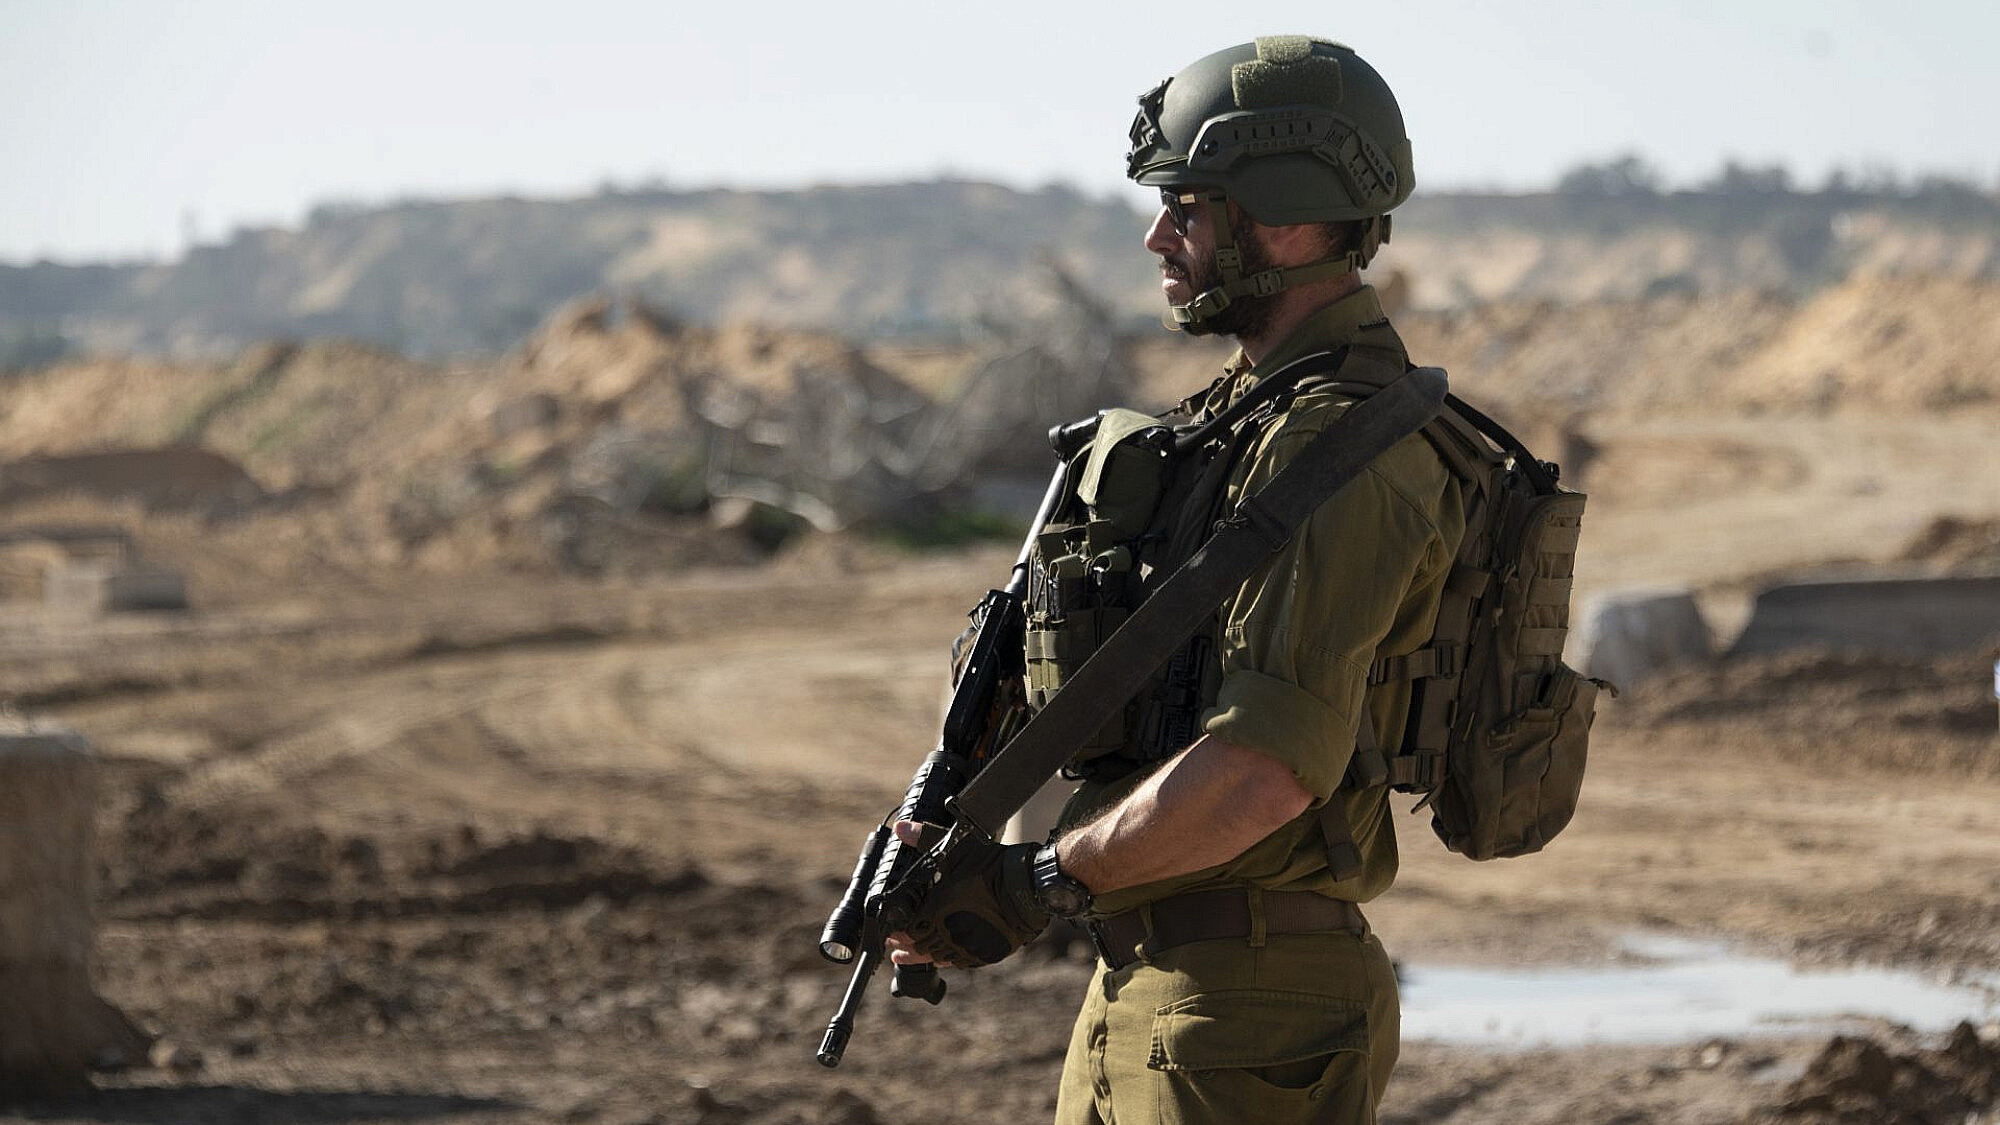 חייל צה"ל בעזה. למצולם אין קשר לכתבה | צילום: Noam Galai/Getty Images